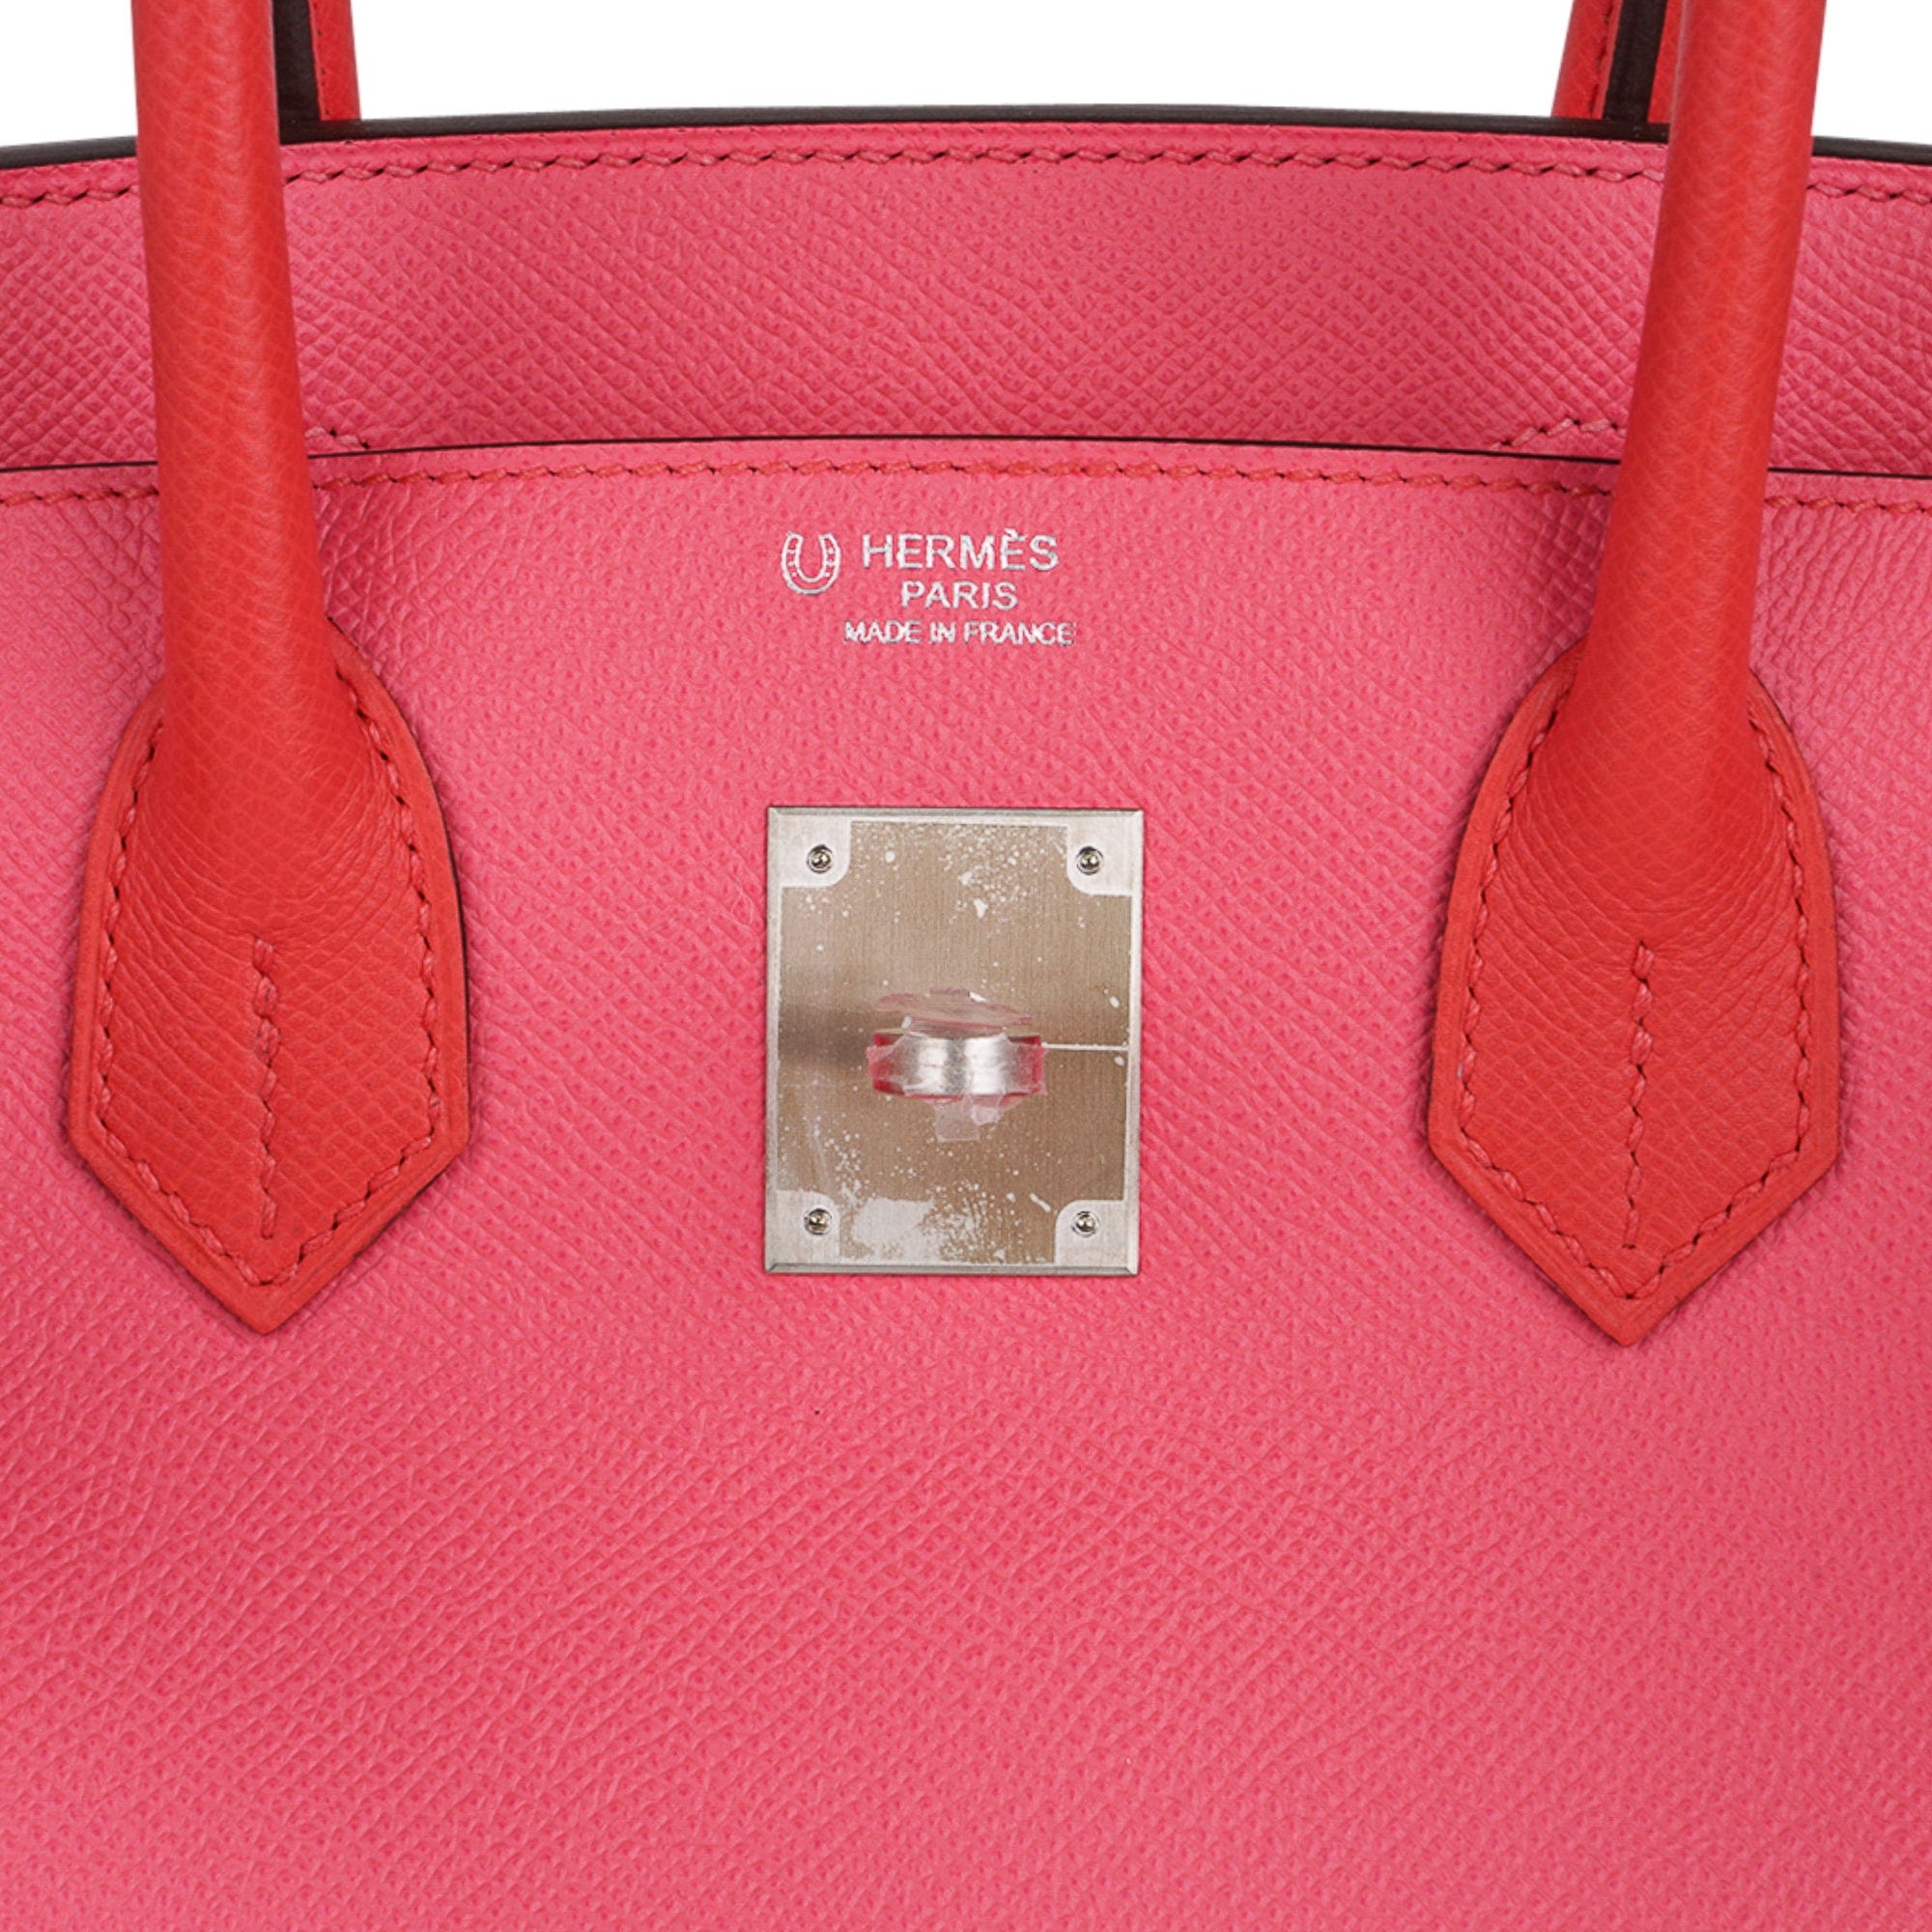 HSS Hermes Birkin 25 Rose Azalee Lime Pink VIP Order Bag Exclusive Y Stamp,  2020